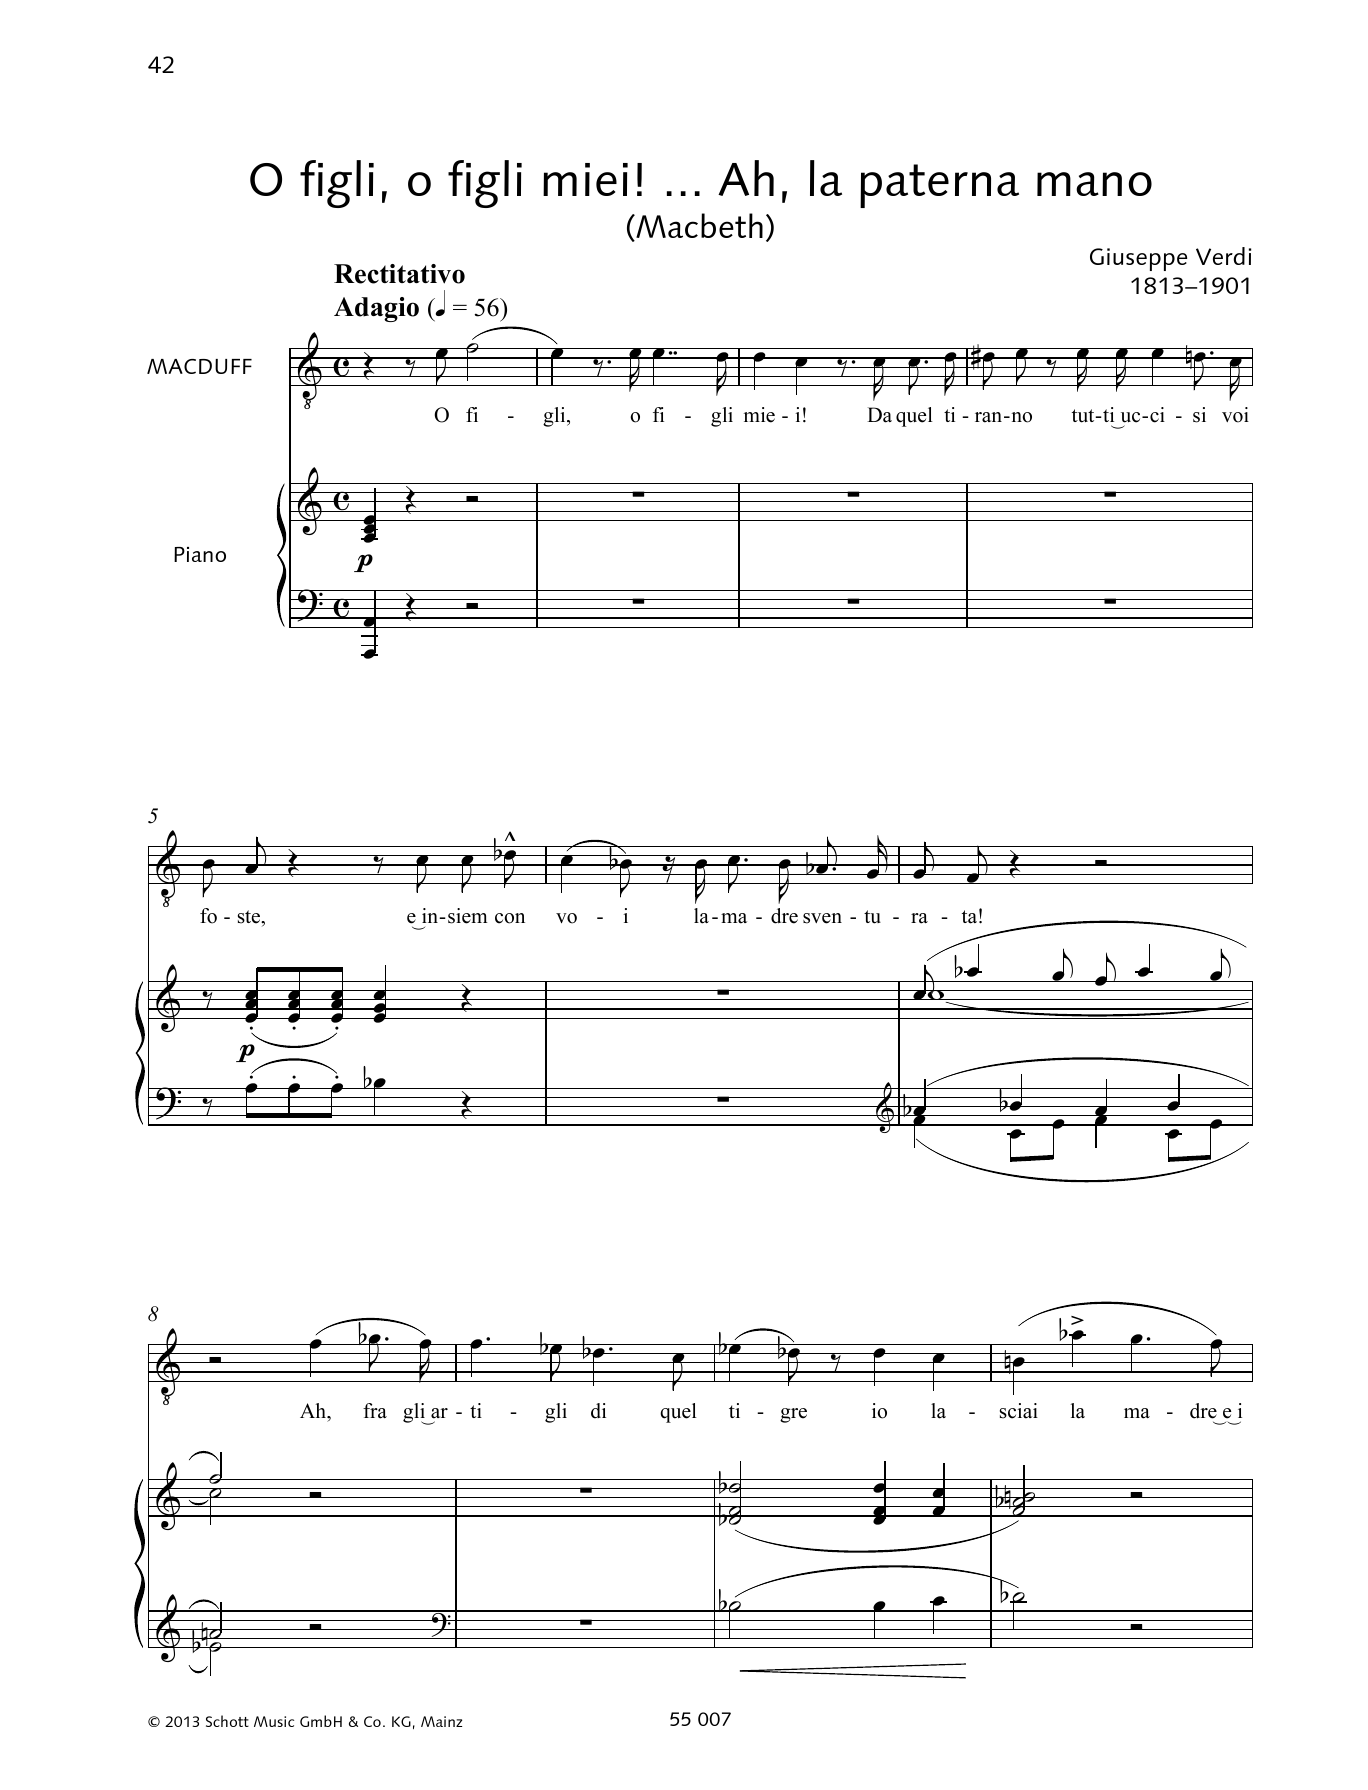 Francesca Licciarda O figli, o figli miei! ... Ah, la paterna mano Sheet Music Notes & Chords for Piano & Vocal - Download or Print PDF